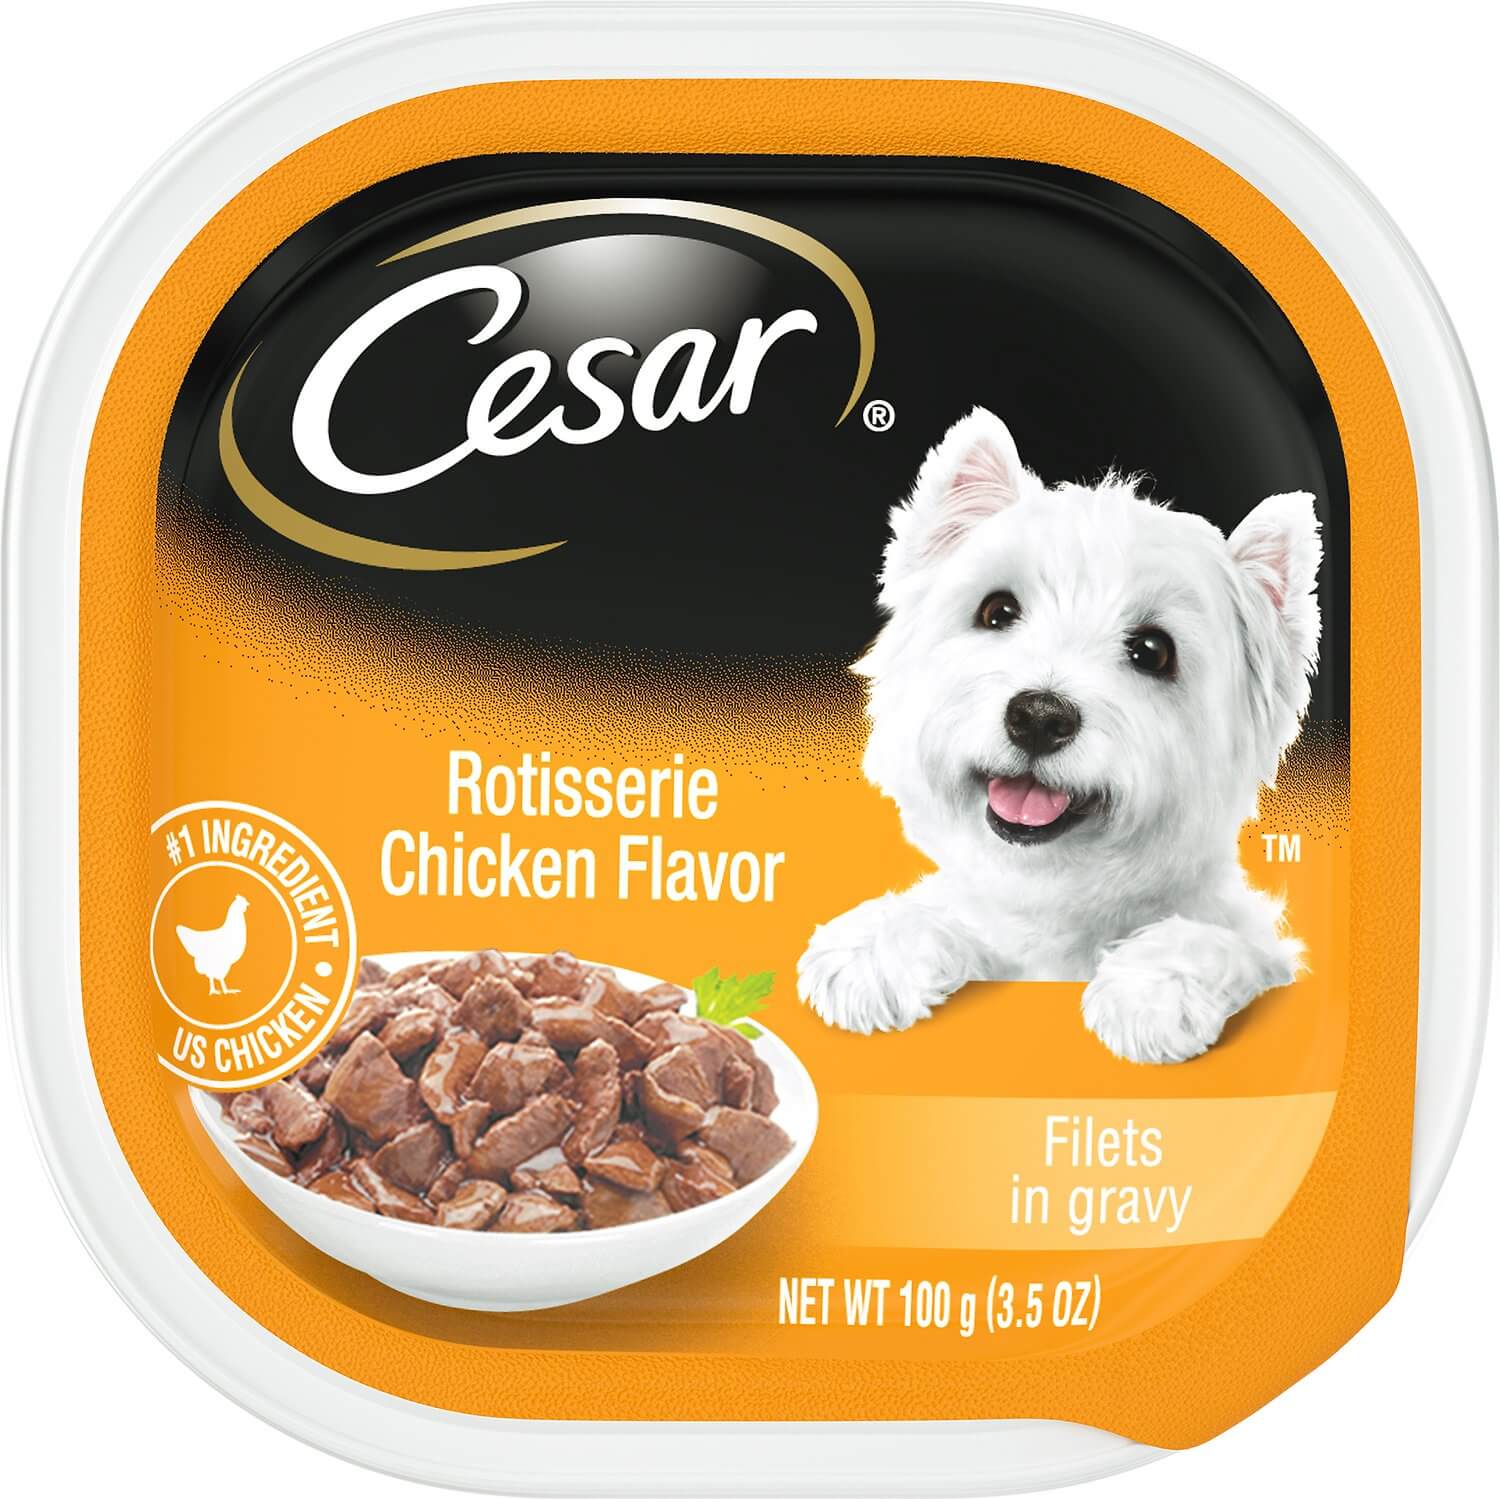 Cesars Rotisserie Chicken Flavor Filets in Gravy Wet Dog Food